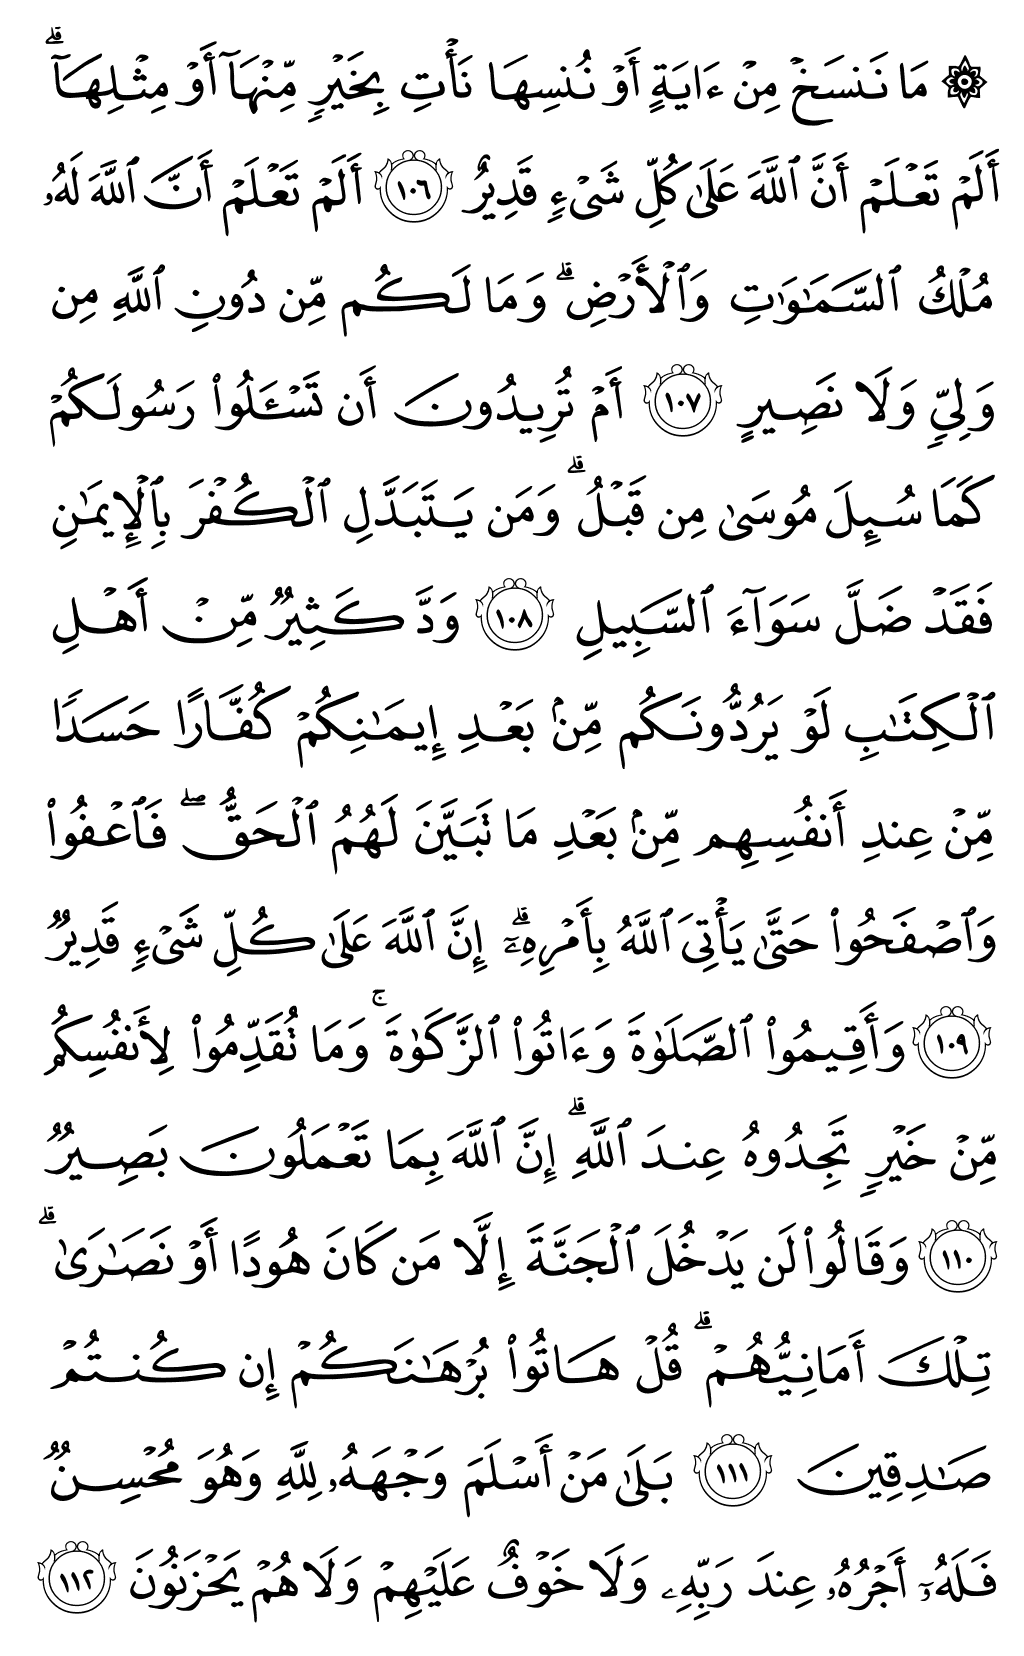 الصفحة رقم 17 من القرآن الكريم